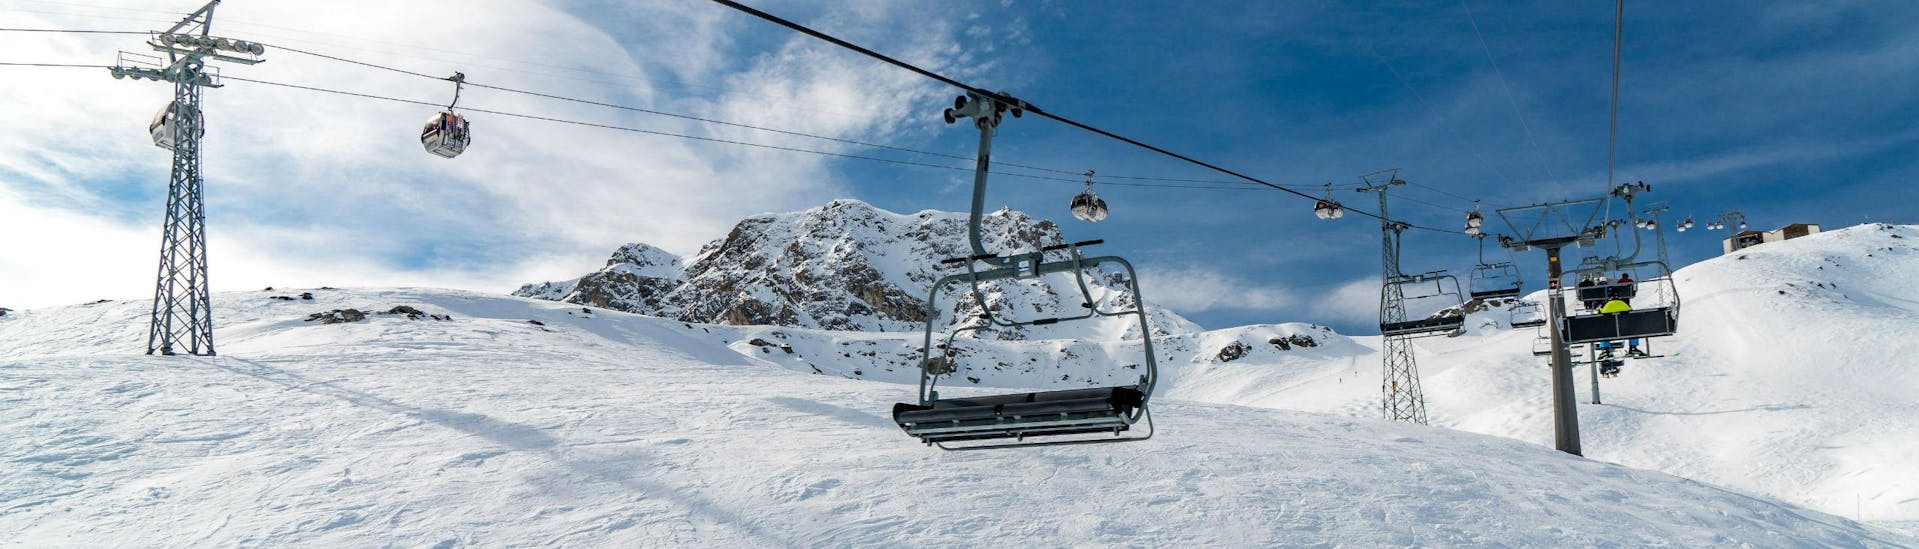 Vue sur un télésiège et une télécabine dans la station de ski suisse d'Arosa, dans les Grisons, où les écoles de ski locales proposent des cours de ski pour tous ceux qui veulent apprendre à skier.